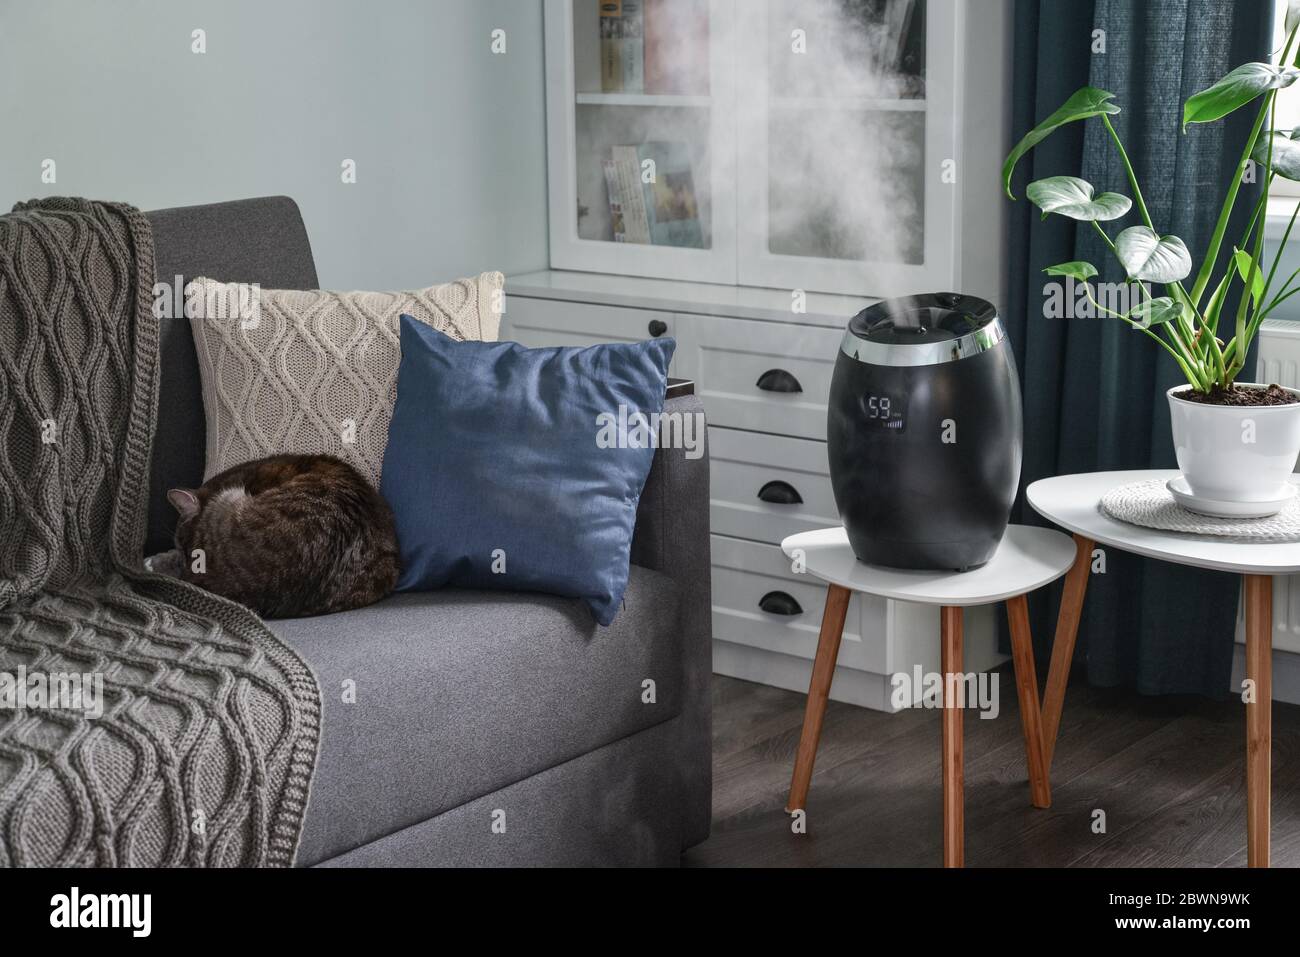 Humidificateur à vapeur froide ultrasonique pour la maison sur une petite table dans la salle de séjour de près Banque D'Images